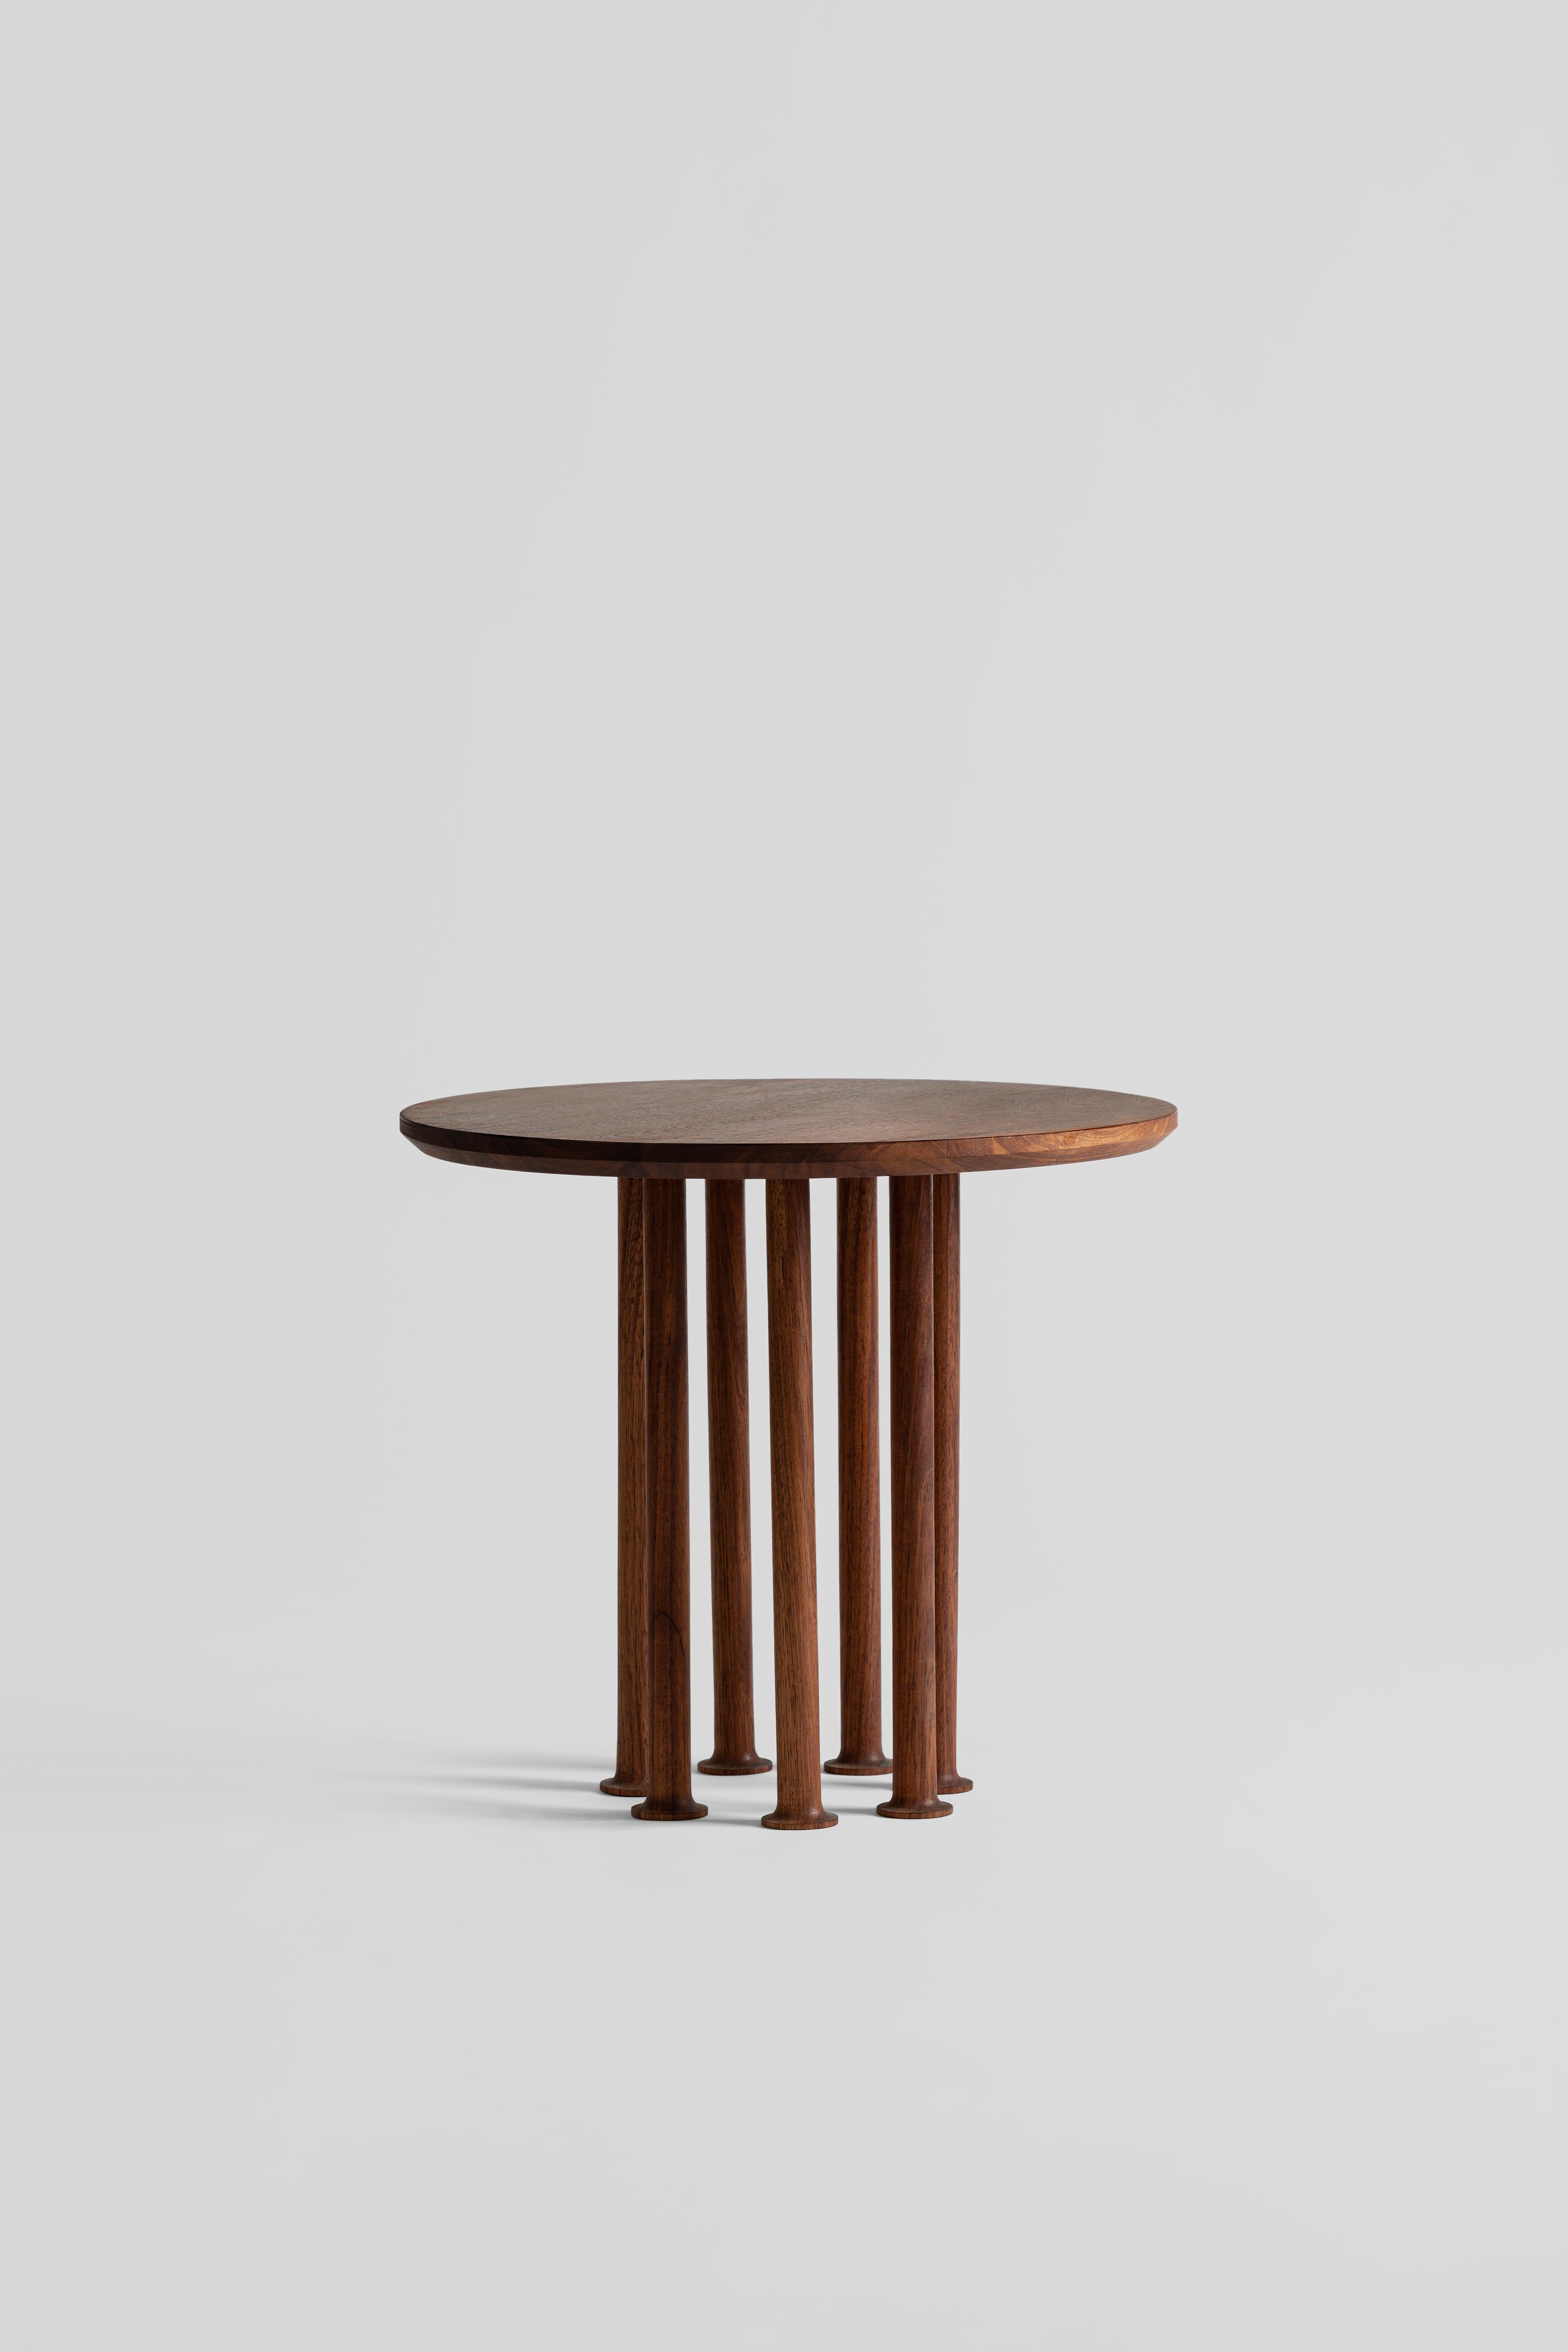 Molinillo est une collection de tables auxiliaires et centrales conçue par la Colección Estudio. Chacun des pieds des tables a été fabriqué manuellement et sa couleur noire intense a été obtenue en carbonisant le bois, une finition inspirée des